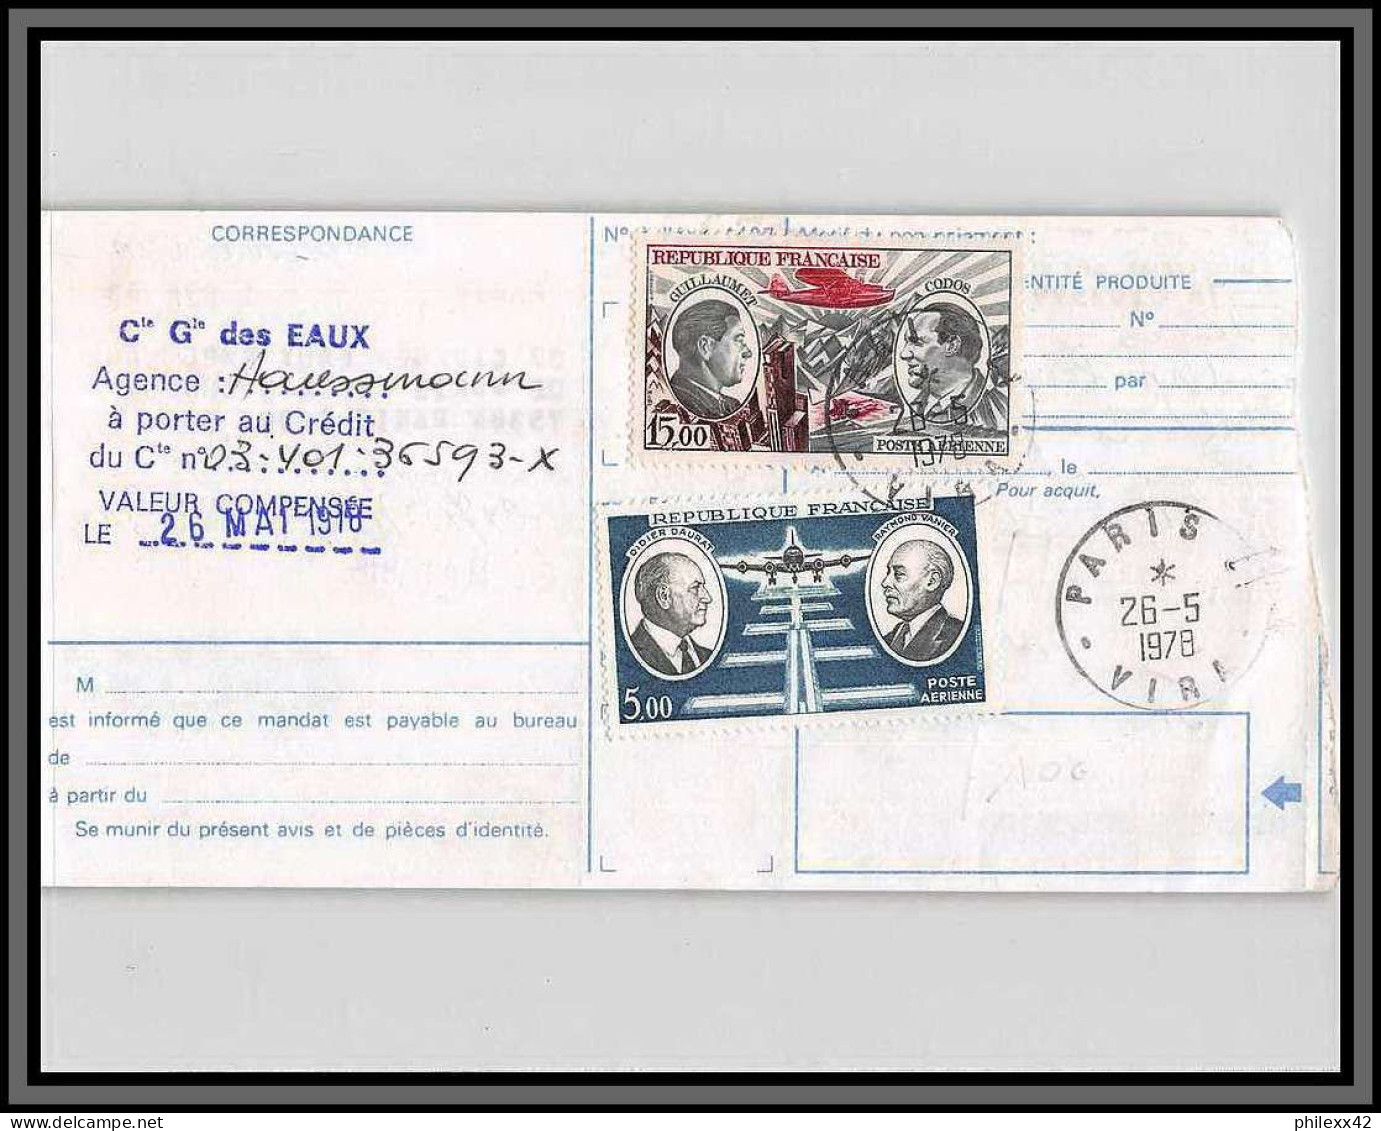 10125 PA N°46/48 Guillaumet Codos Daurat Vanier Paris 26/5/1978 Chèques Postaux CCP Lettre Cover France Aviation  - 1960-.... Lettres & Documents